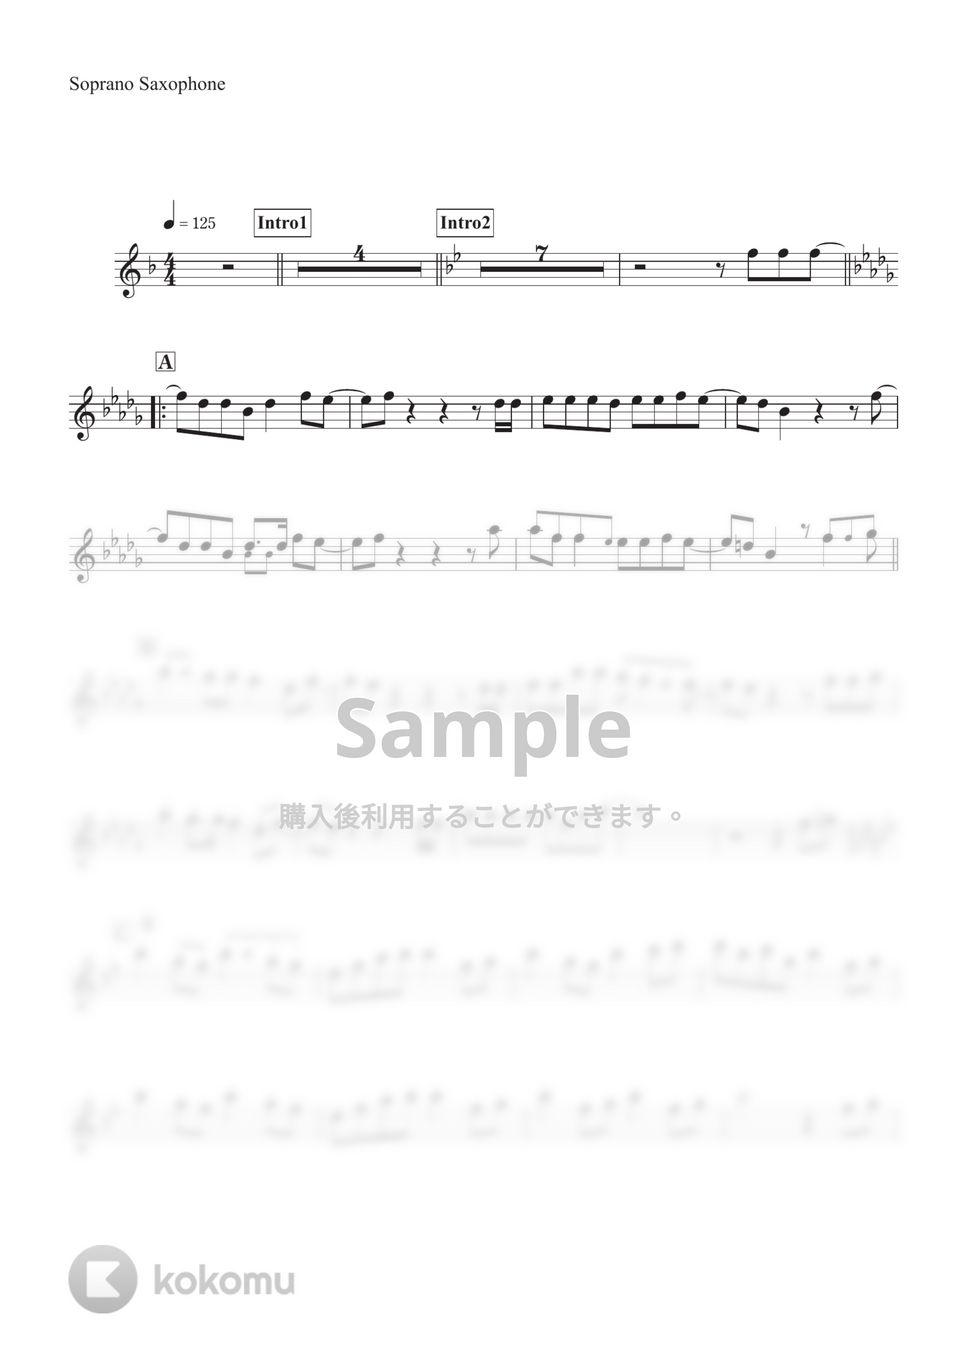 乃木坂46 - I see... (ソプラノサックス用 inB♭譜面) by ALT Music